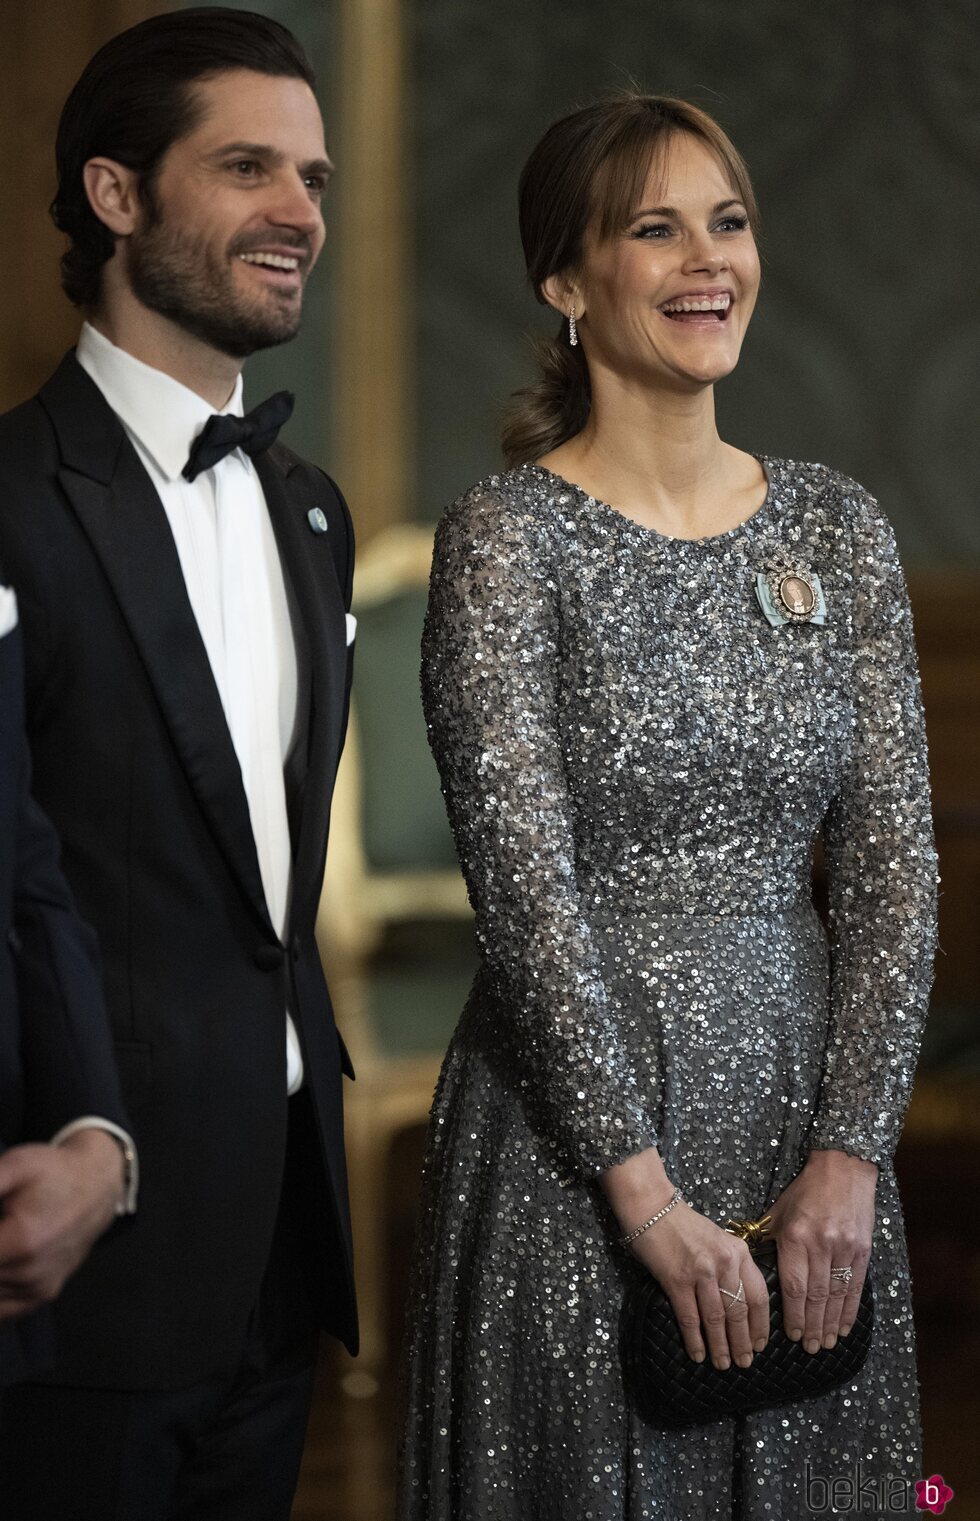 Carlos Felipe y Sofia de Suecia en la cena de gala por el comienzo del año del Jubileo del Rey de Suecia